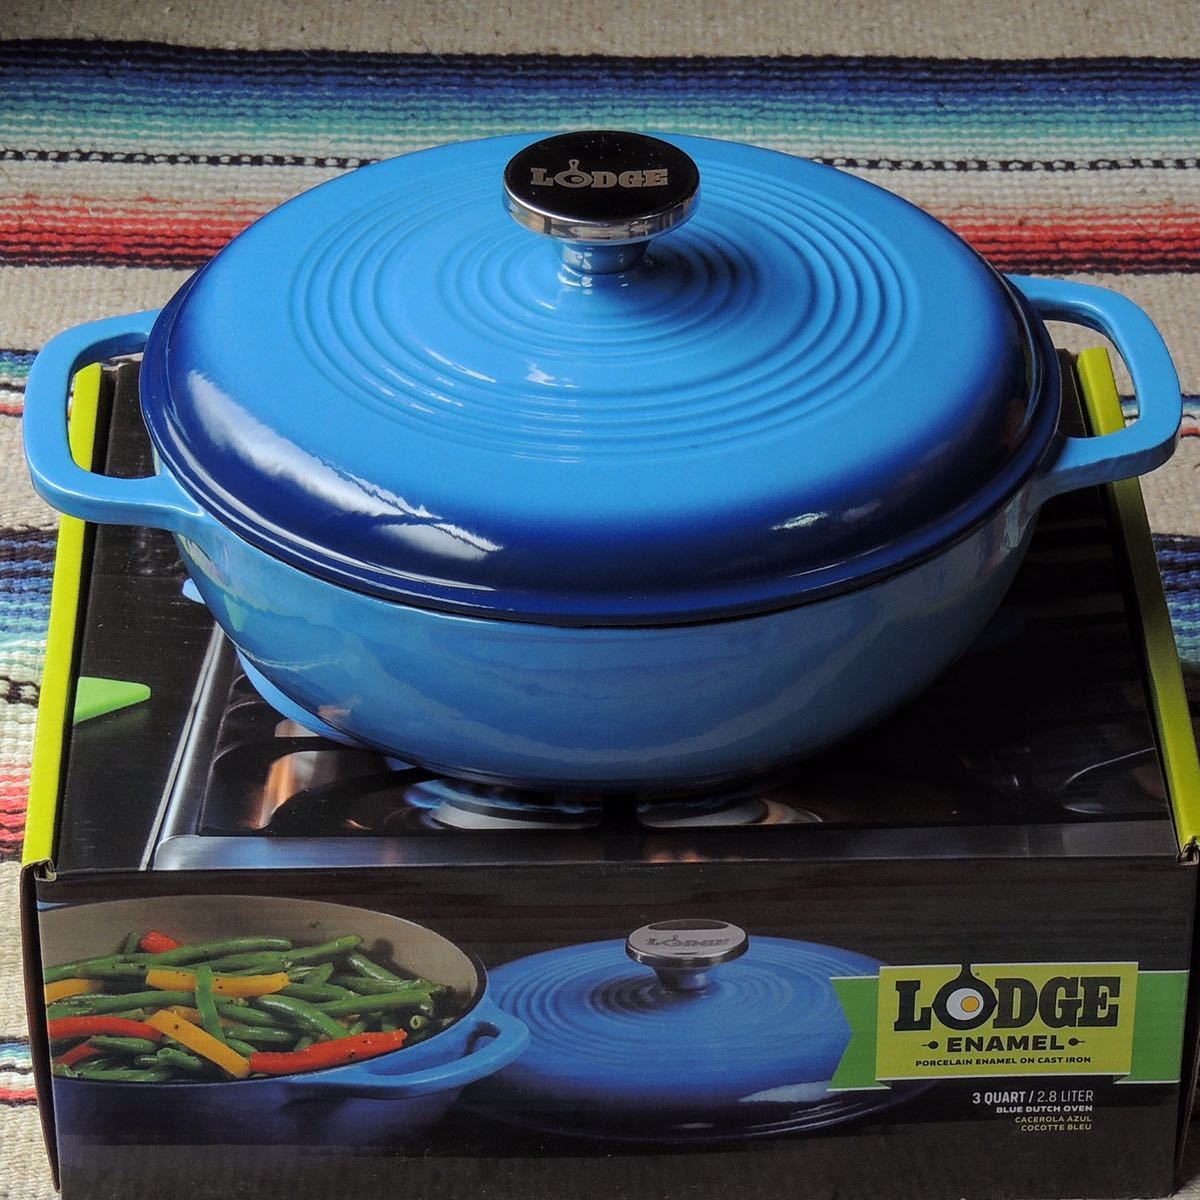 ロッジLODGEエナメルダッチオーブン3qt(2.8L)ブルー琺瑯ホーロー鍋両手鍋IH対応 キッチン 調理器具 正規品